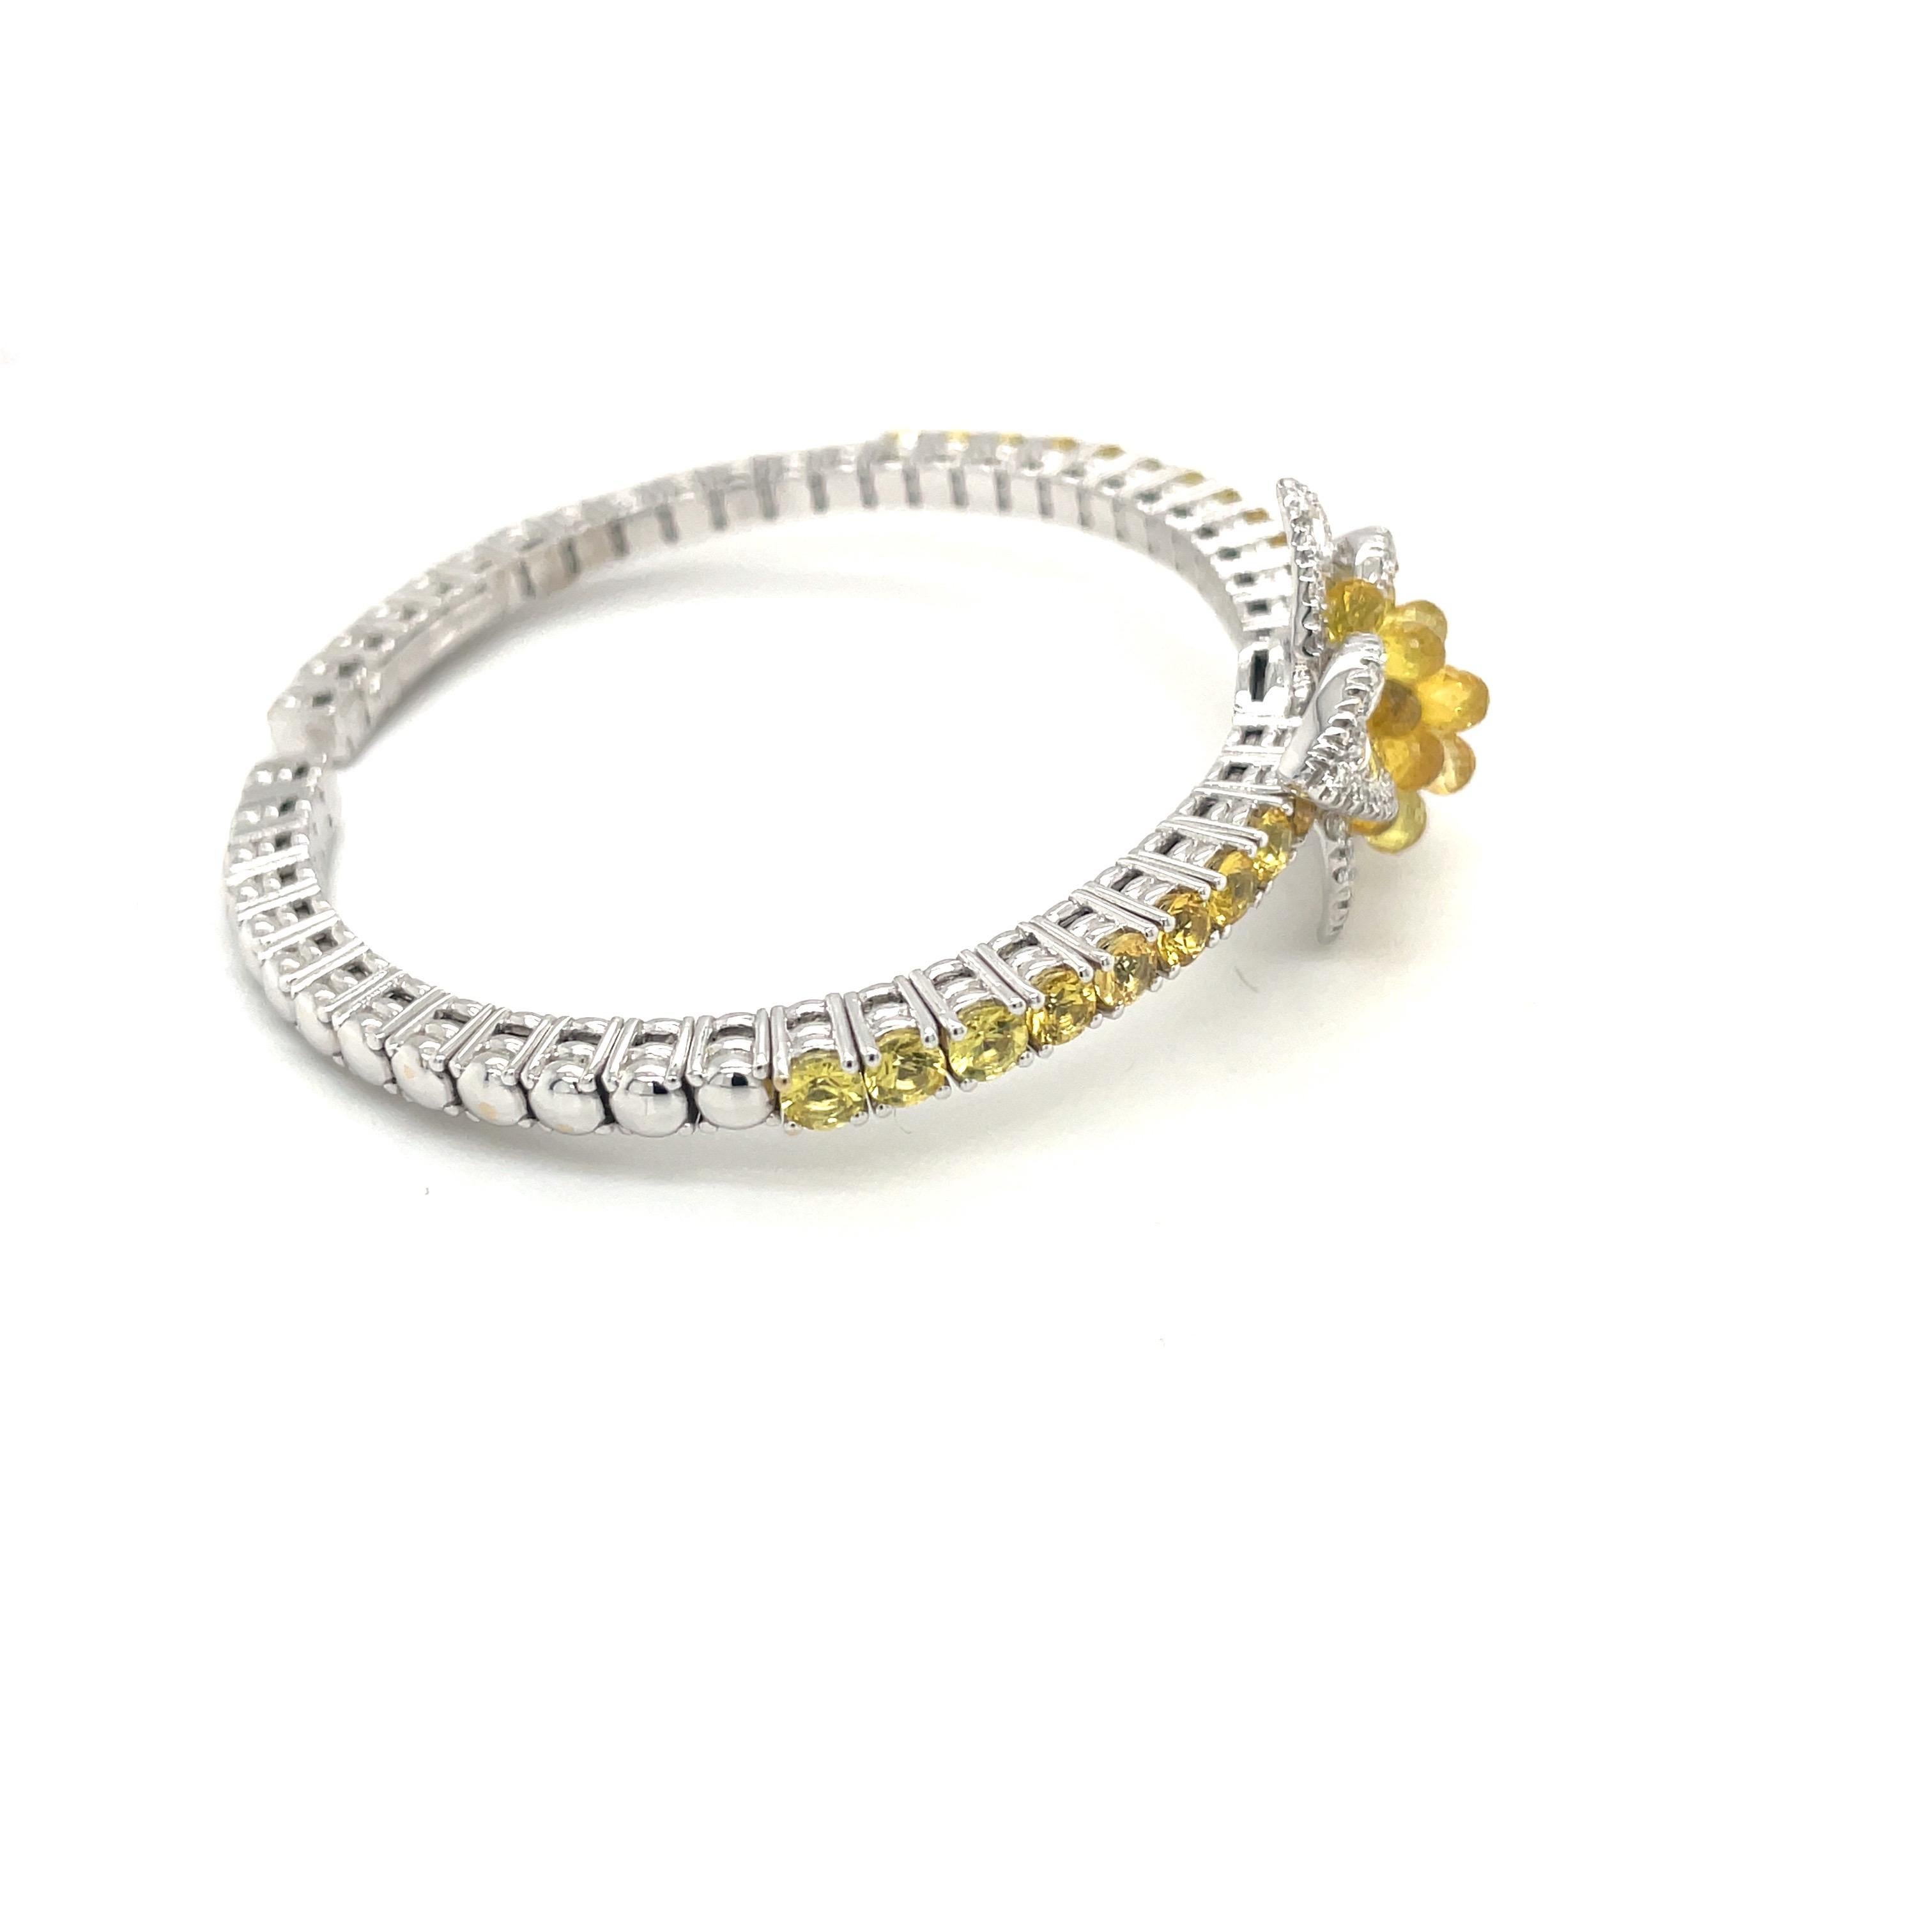 Ce bracelet fleur unique est composé de 0,87 carats de diamants ronds de taille brillant et rose, et de 9,21 carats de saphirs jaunes de taille ronde et en briolette.
Les saphirs en briolette au centre de la fleur de diamant sont en relief, ce qui